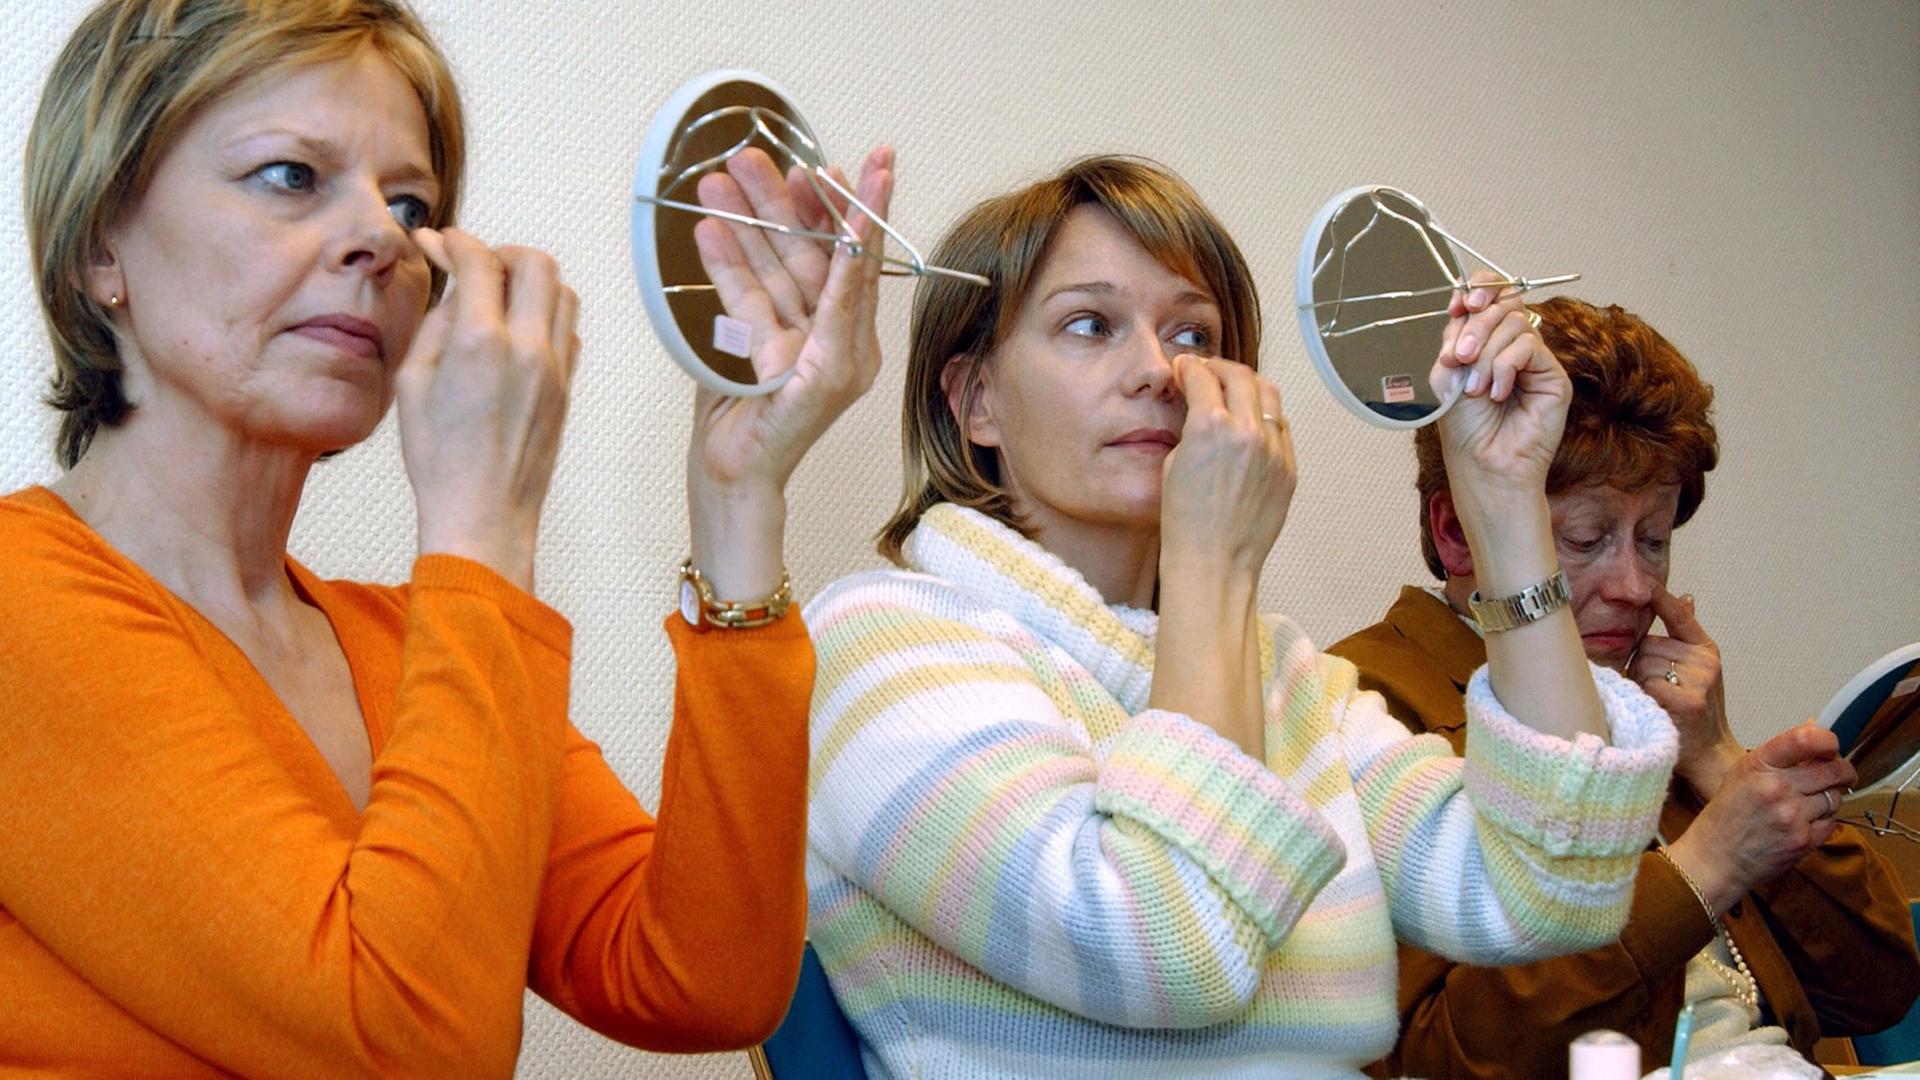 An Krebs erkrankte Patientinnen schminken sich während des Kurses "Freude am Leben" im St.-Johannes-Hospital in Dortmund (Foto vom 16.02.2005). Infolge der Krankheit und der Behandlung durch Strahlen- oder Chemotherapie fallen bei vielen Betroffenen die Haare aus, die Haut verändert sich und wird empfindlicher. Make-up und die richtigen Schminktipps sollen den Frauen helfen, sich schön zu fühlen und "Freude am Leben" zurückzugewinnen.